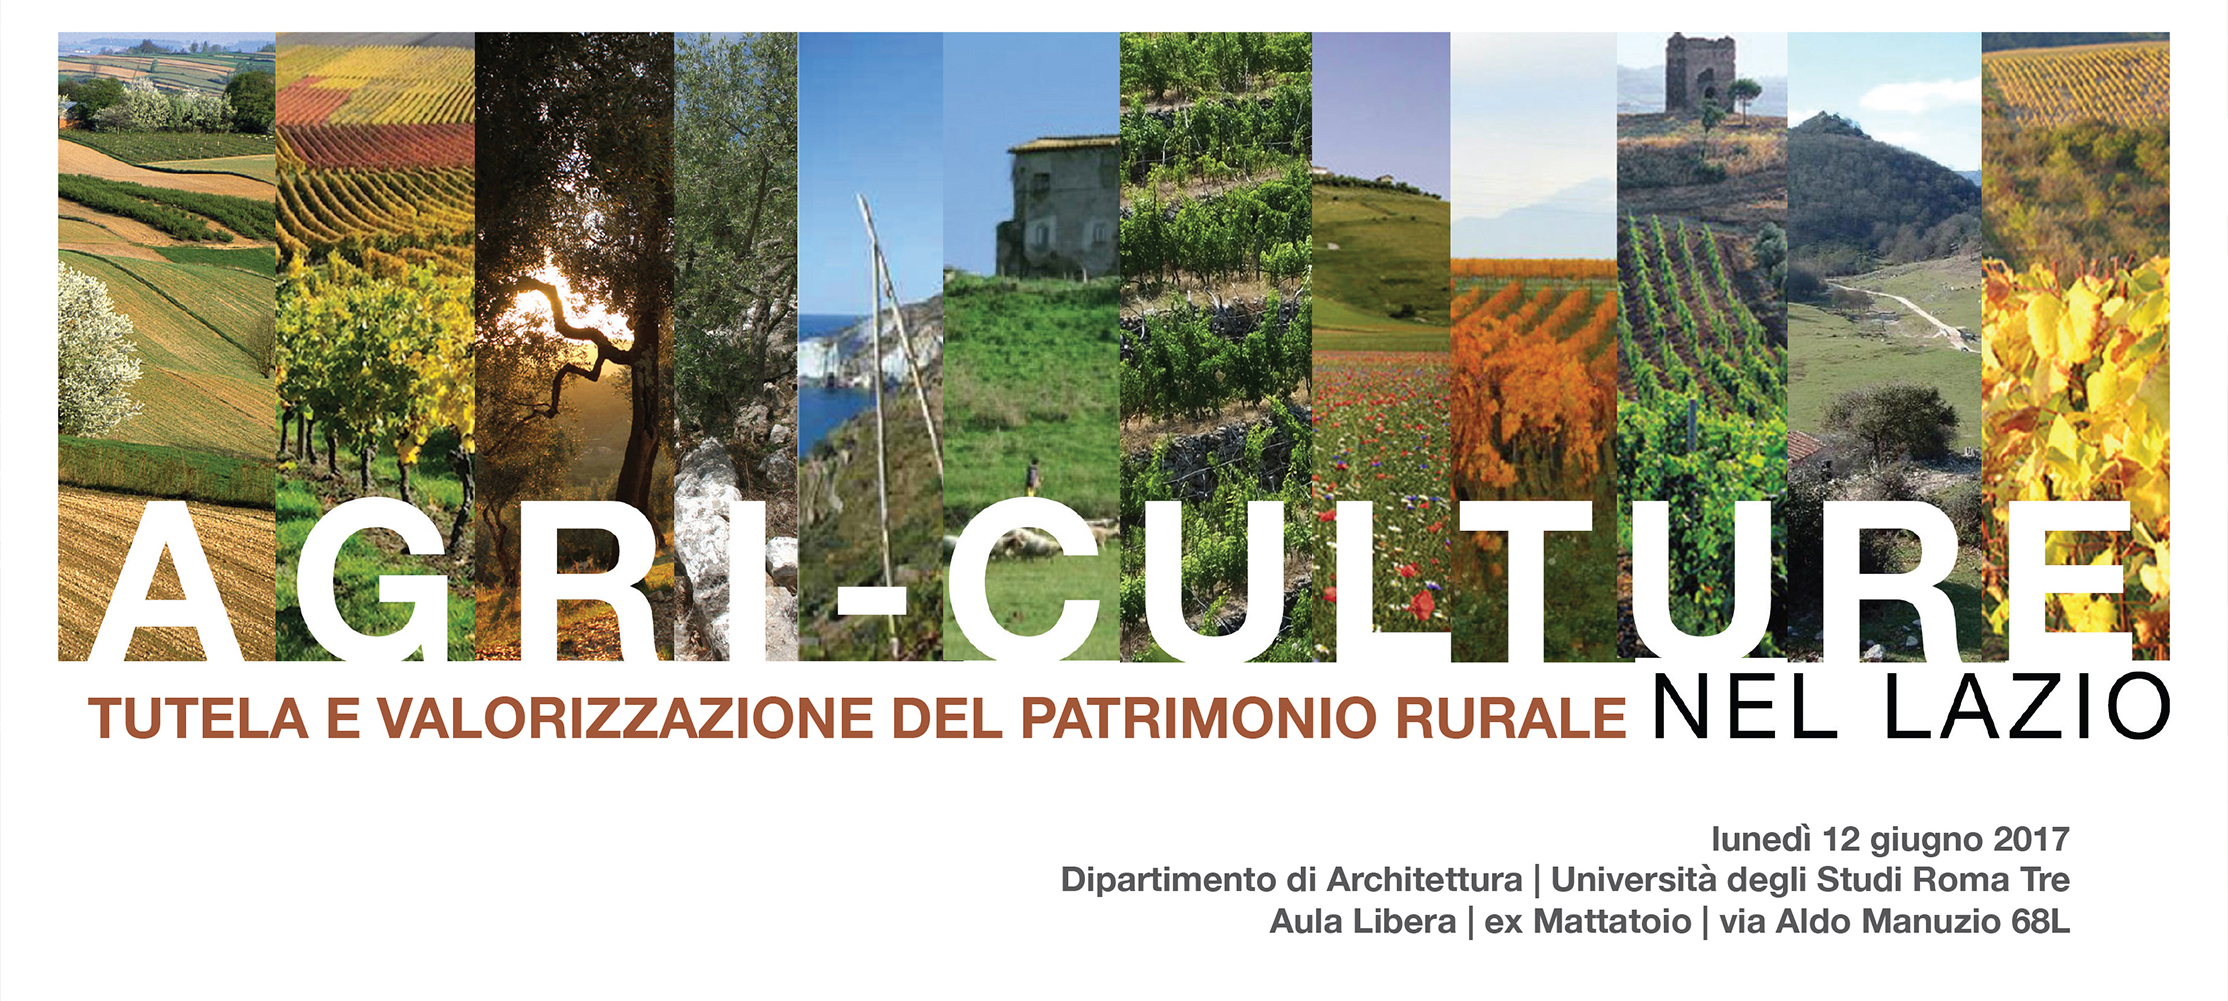 AGRI-CULTURE Tutela e valorizzazione del patrimonio rurale del Lazio: 12 giugno, Roma